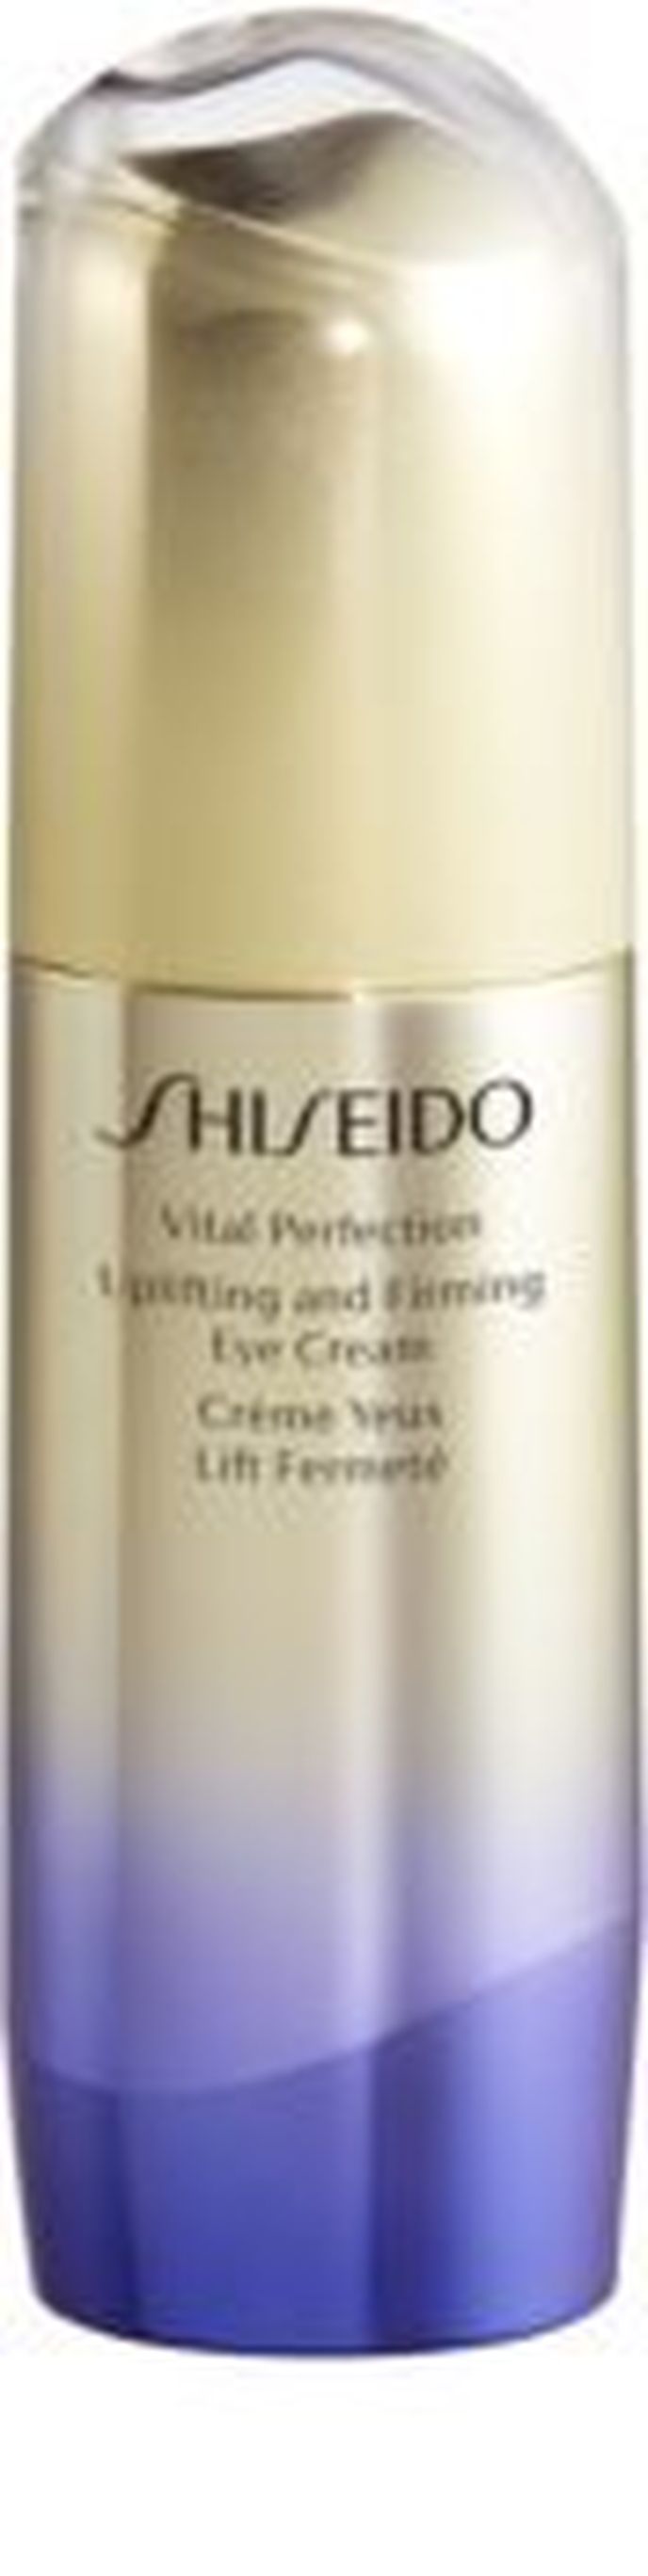 Zpevňující oční krém proti vráskám Vital Perfection Uplifting and Firming Eye Cream, Shiseido, notino.cz, 2104 Kč/15 ml